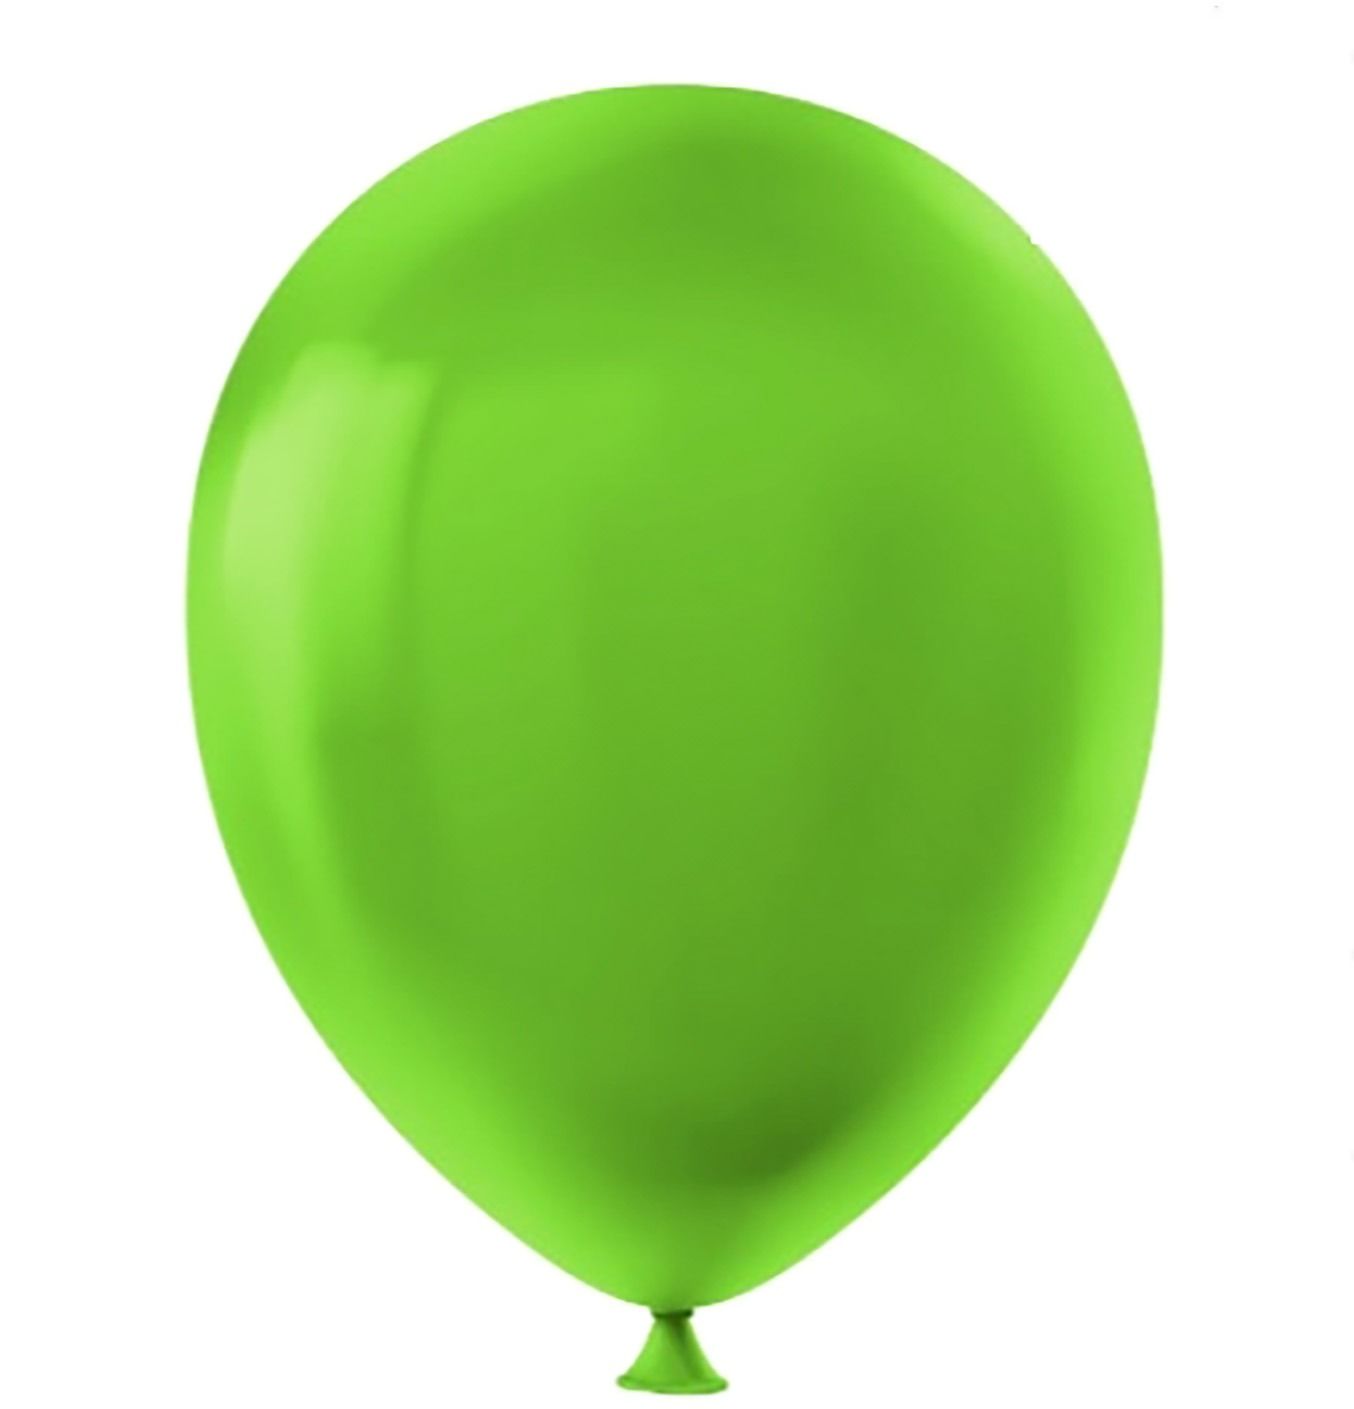 Koyu Yeşil Renk Pastel Balon 12 inç 30 cm